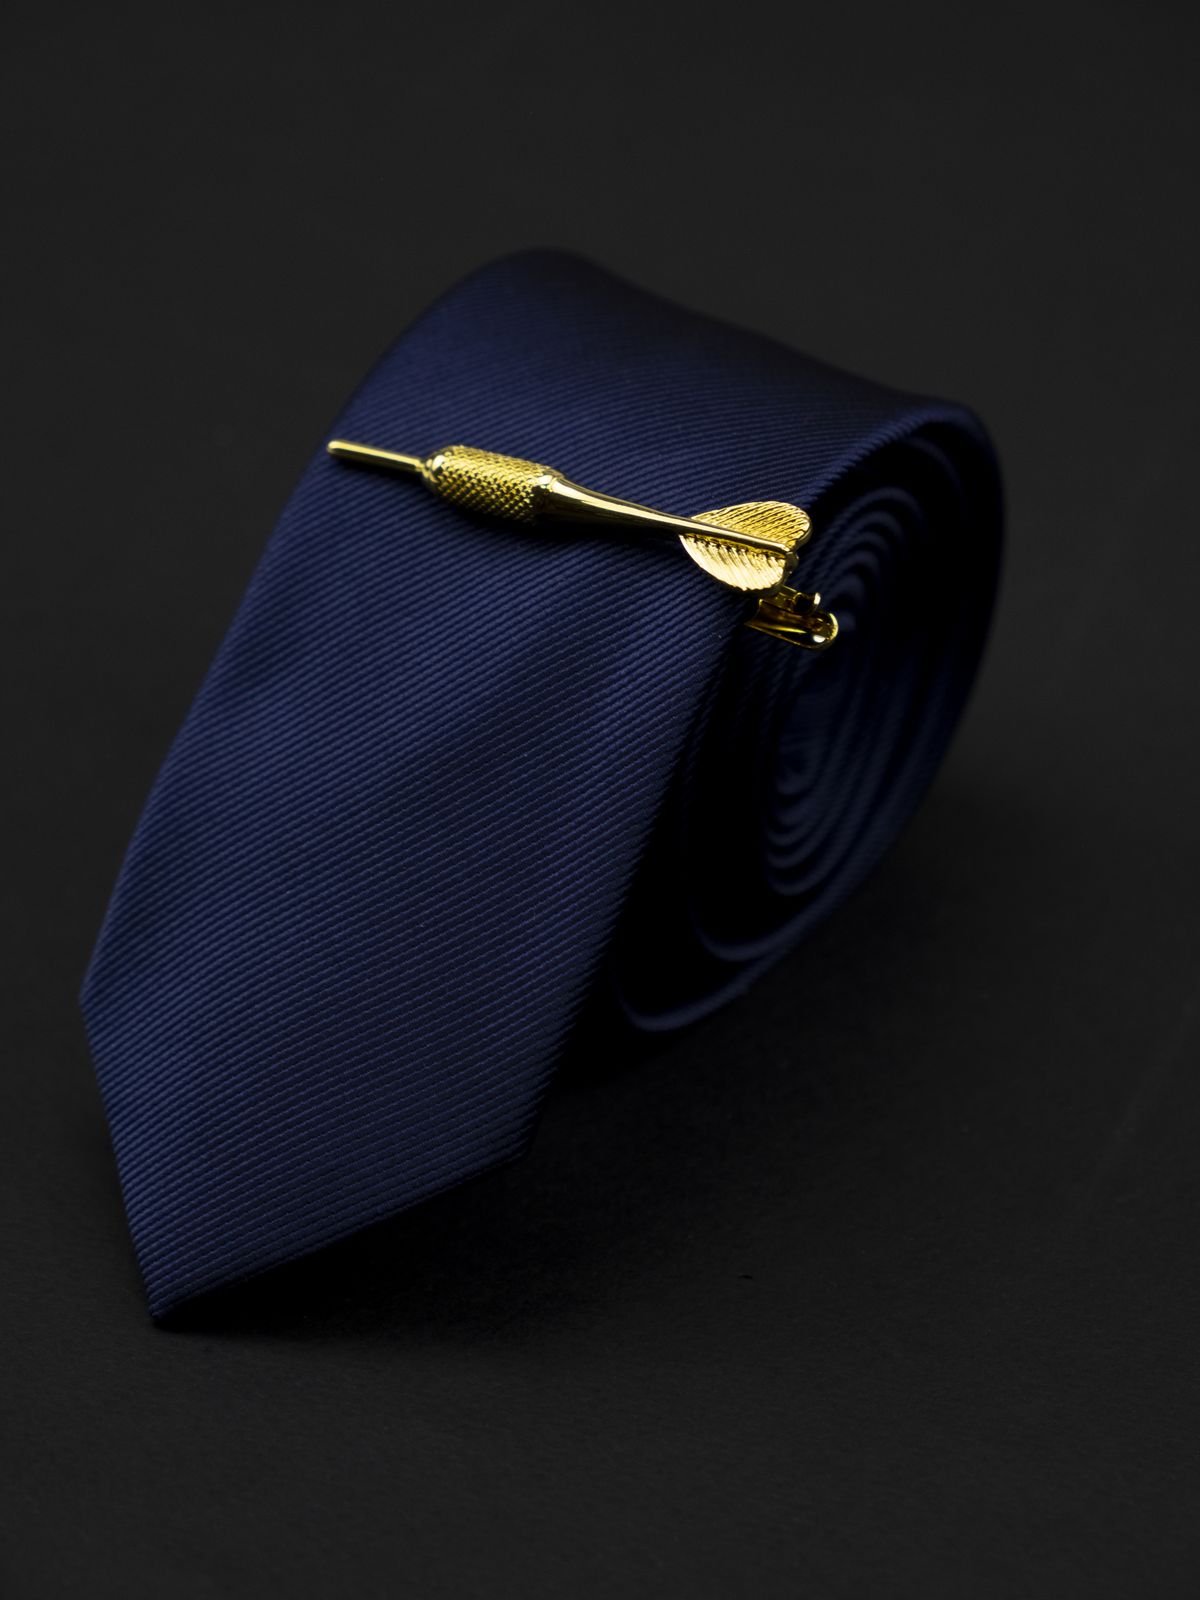 Зажим для галстука дротик золотой купить. Состав: Ювелирная сталь 316L, Цвет: Золотой, Габариты: 60 мм х 10 мм (в самой широкой части), Вес: 23 гр.; 